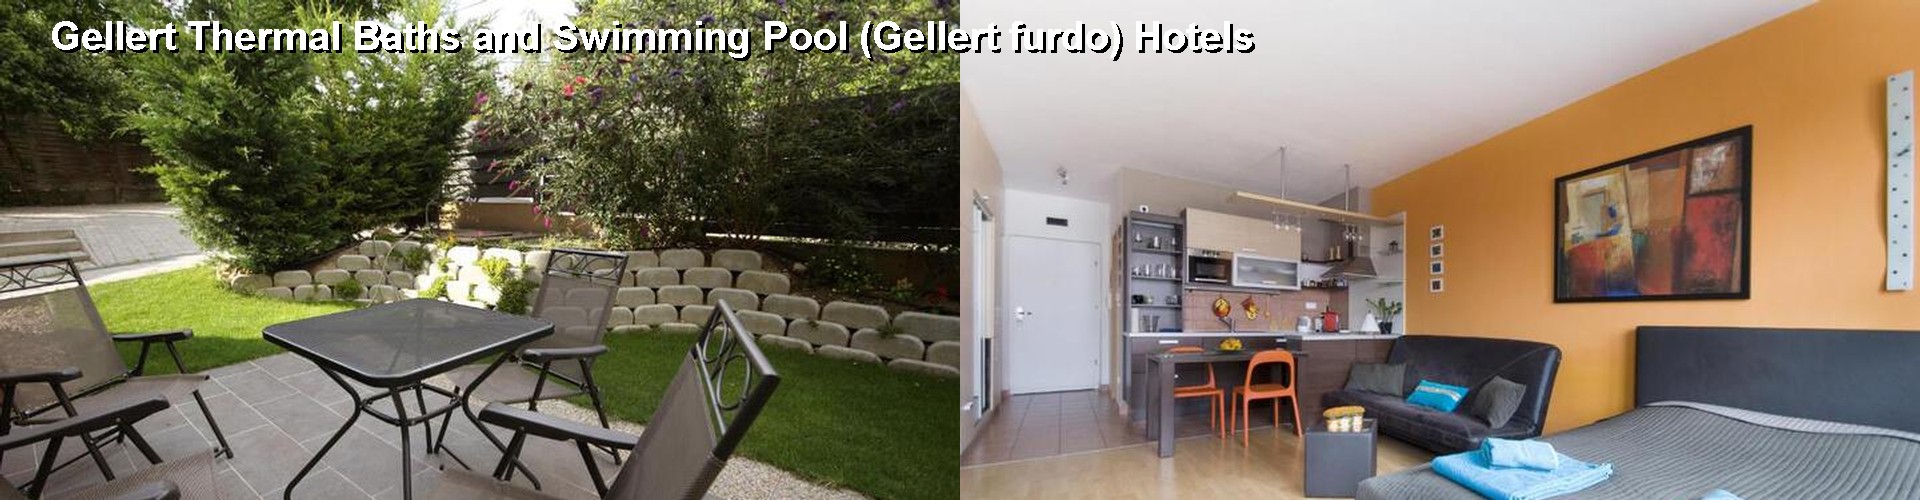 5 Best Hotels near Gellert Thermal Baths and Swimming Pool (Gellert furdo)